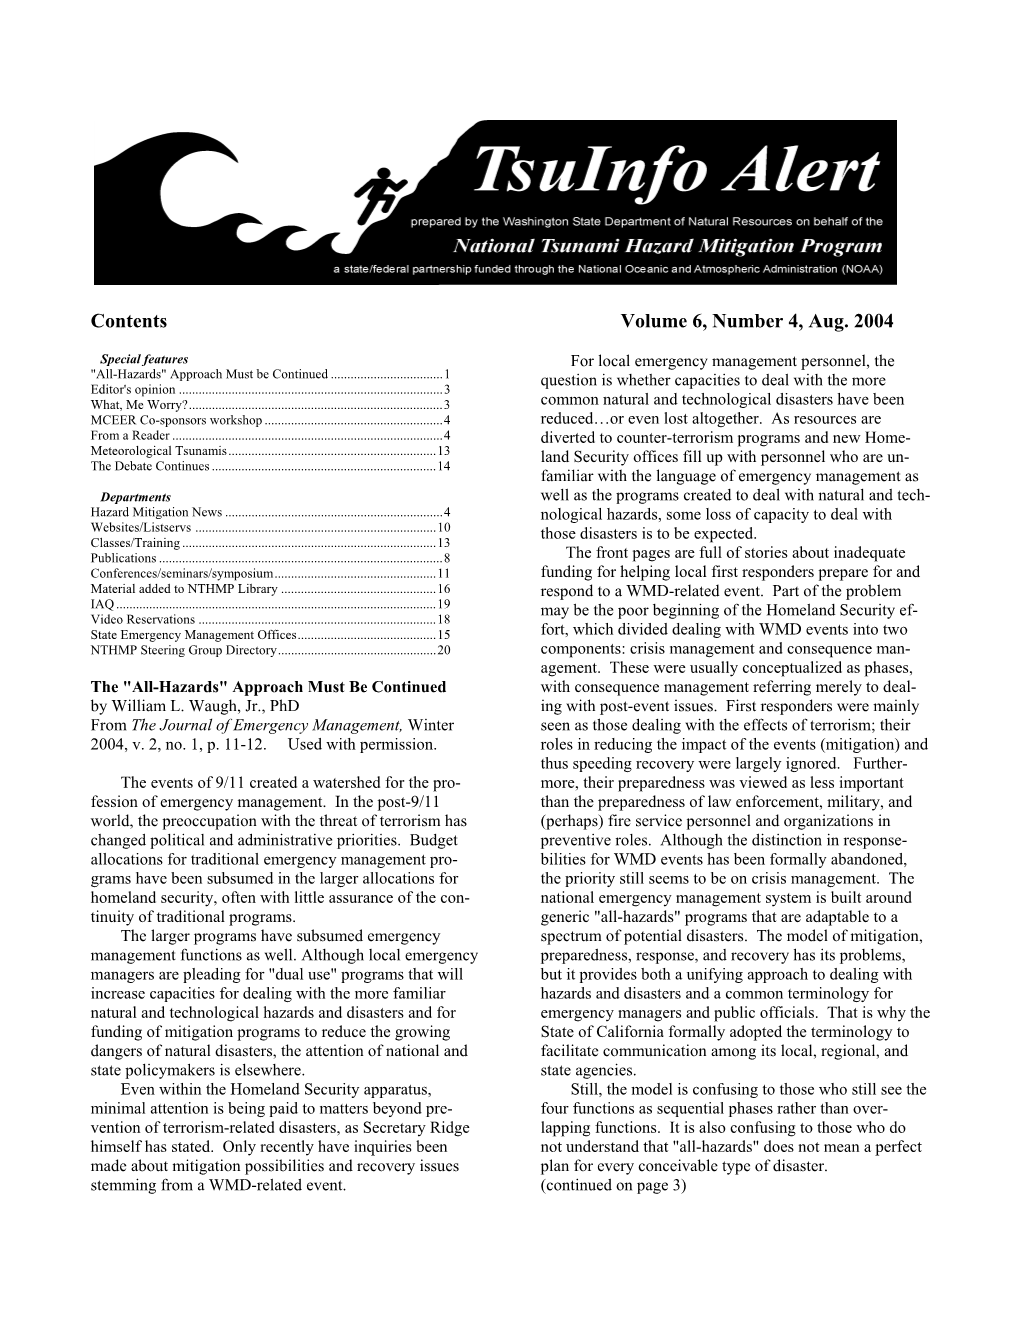 Tsuinfo Alert, August 2004